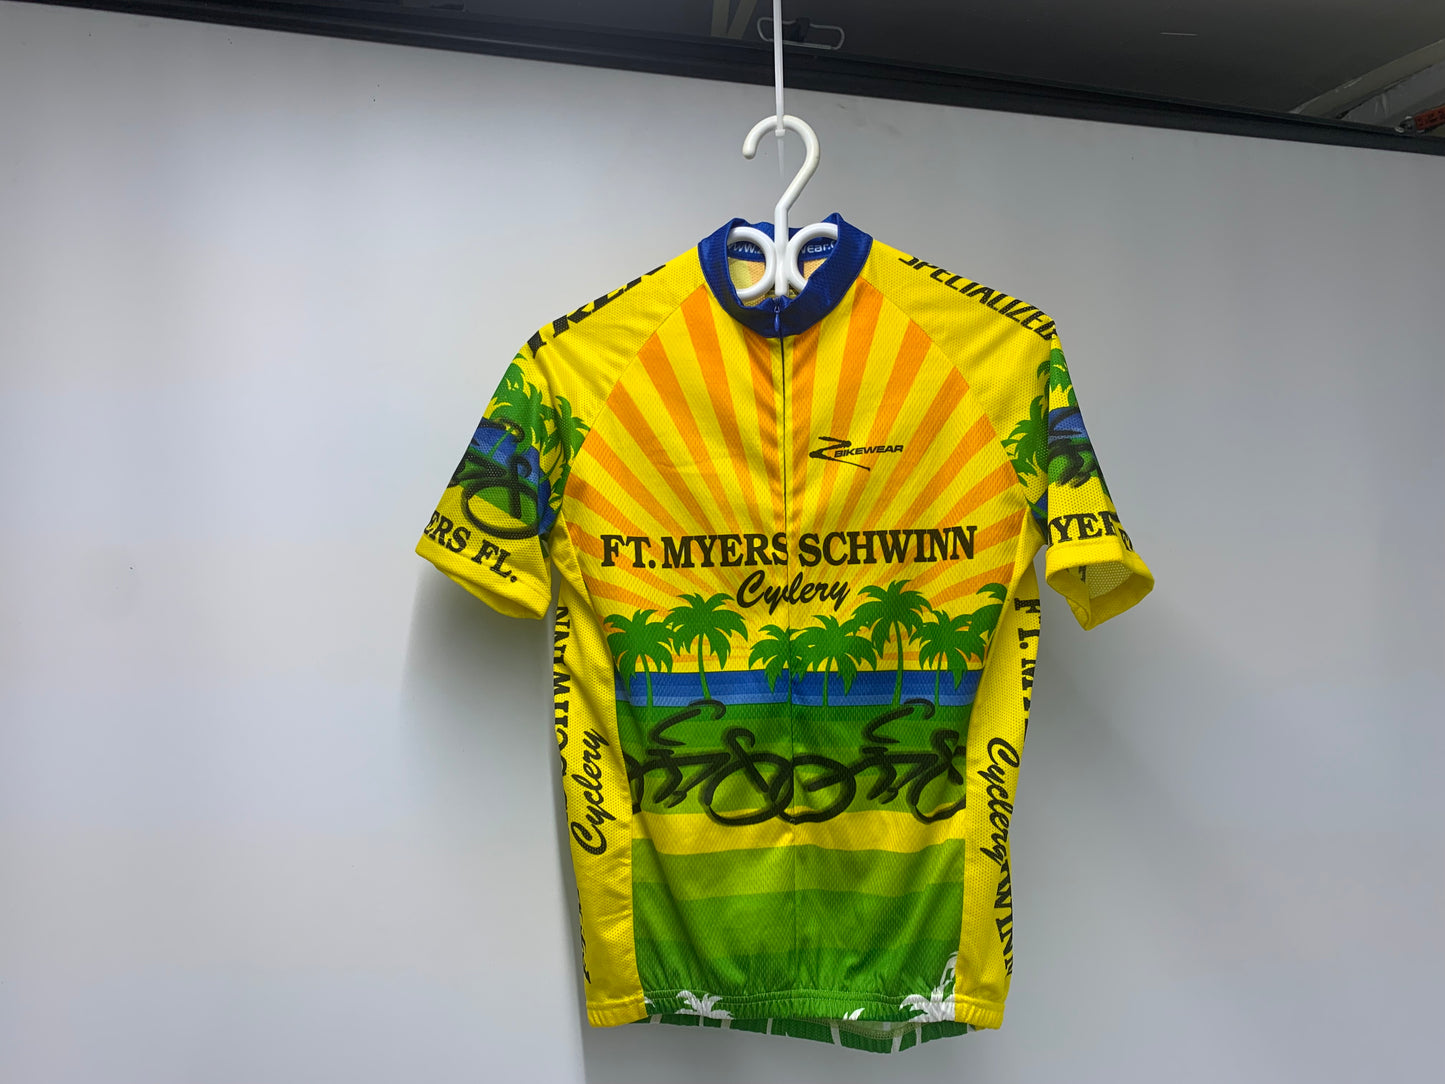 Ft. Myers Schwinn Cyclery Jersey